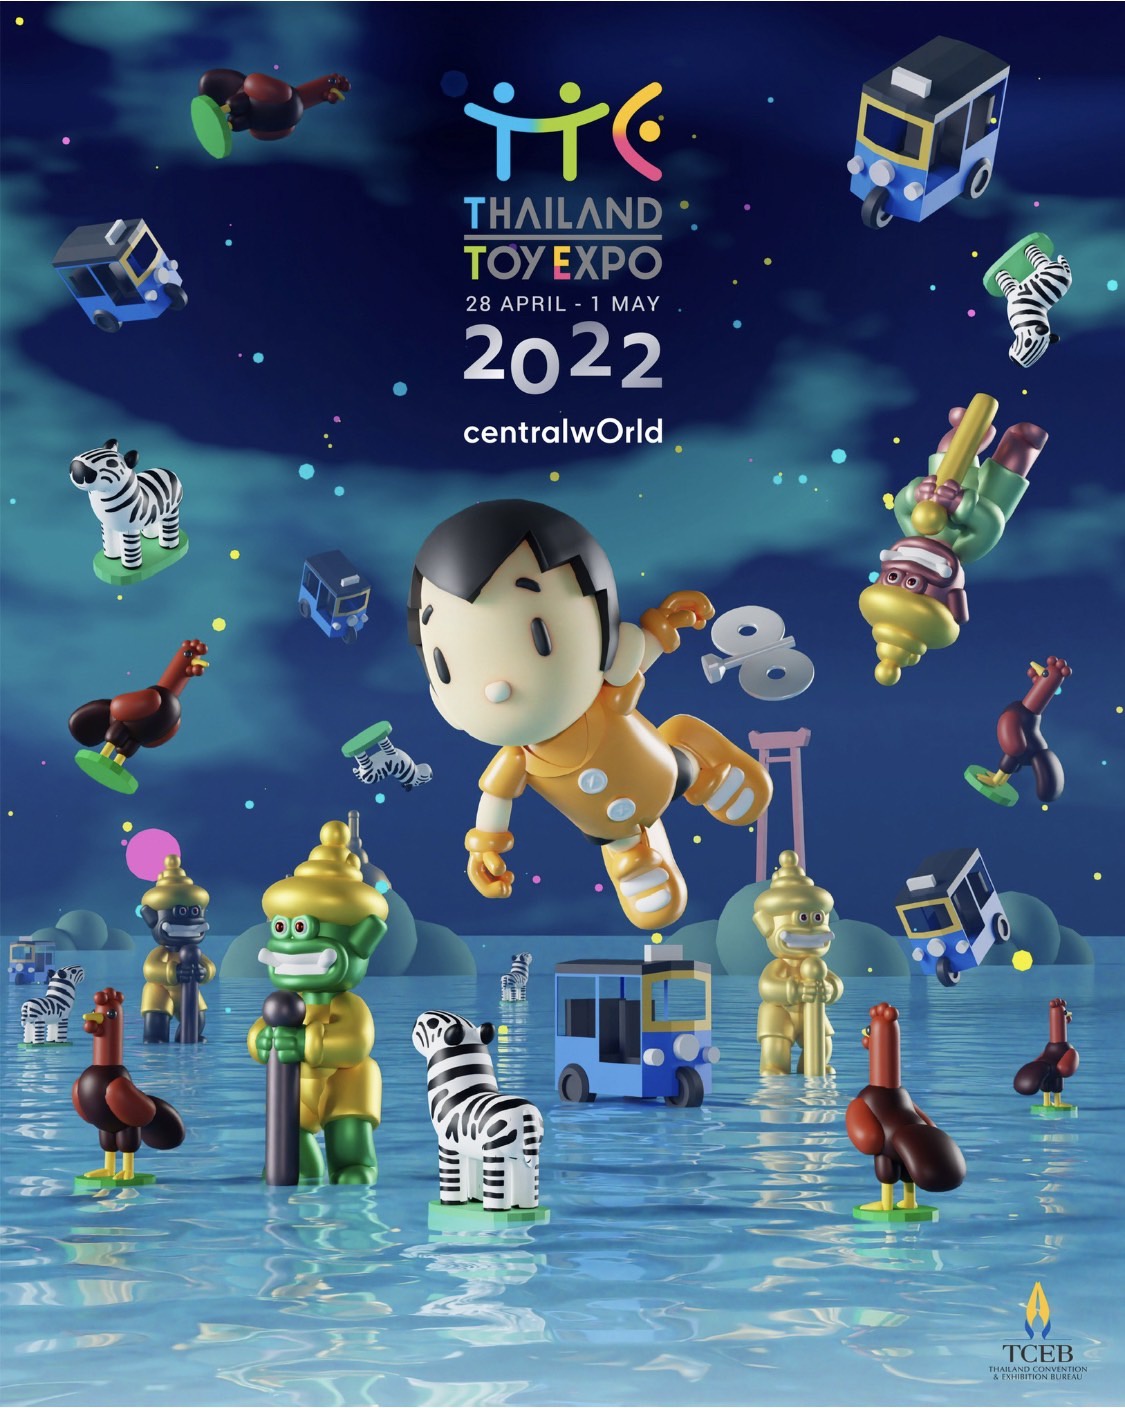 แฟนฟิกเกอร์ นักสะสมของเล่น เตรียมตัวให้พร้อม มหกรรมการแสดงของเล่นระดับโลกที่ยิ่งใหญ่ที่สุด Thailand Toy Expo 2022 เริ่ม 28 เม.ย. - 1 พ.ค.65 ที่เซ็นทรัลเวิลด์